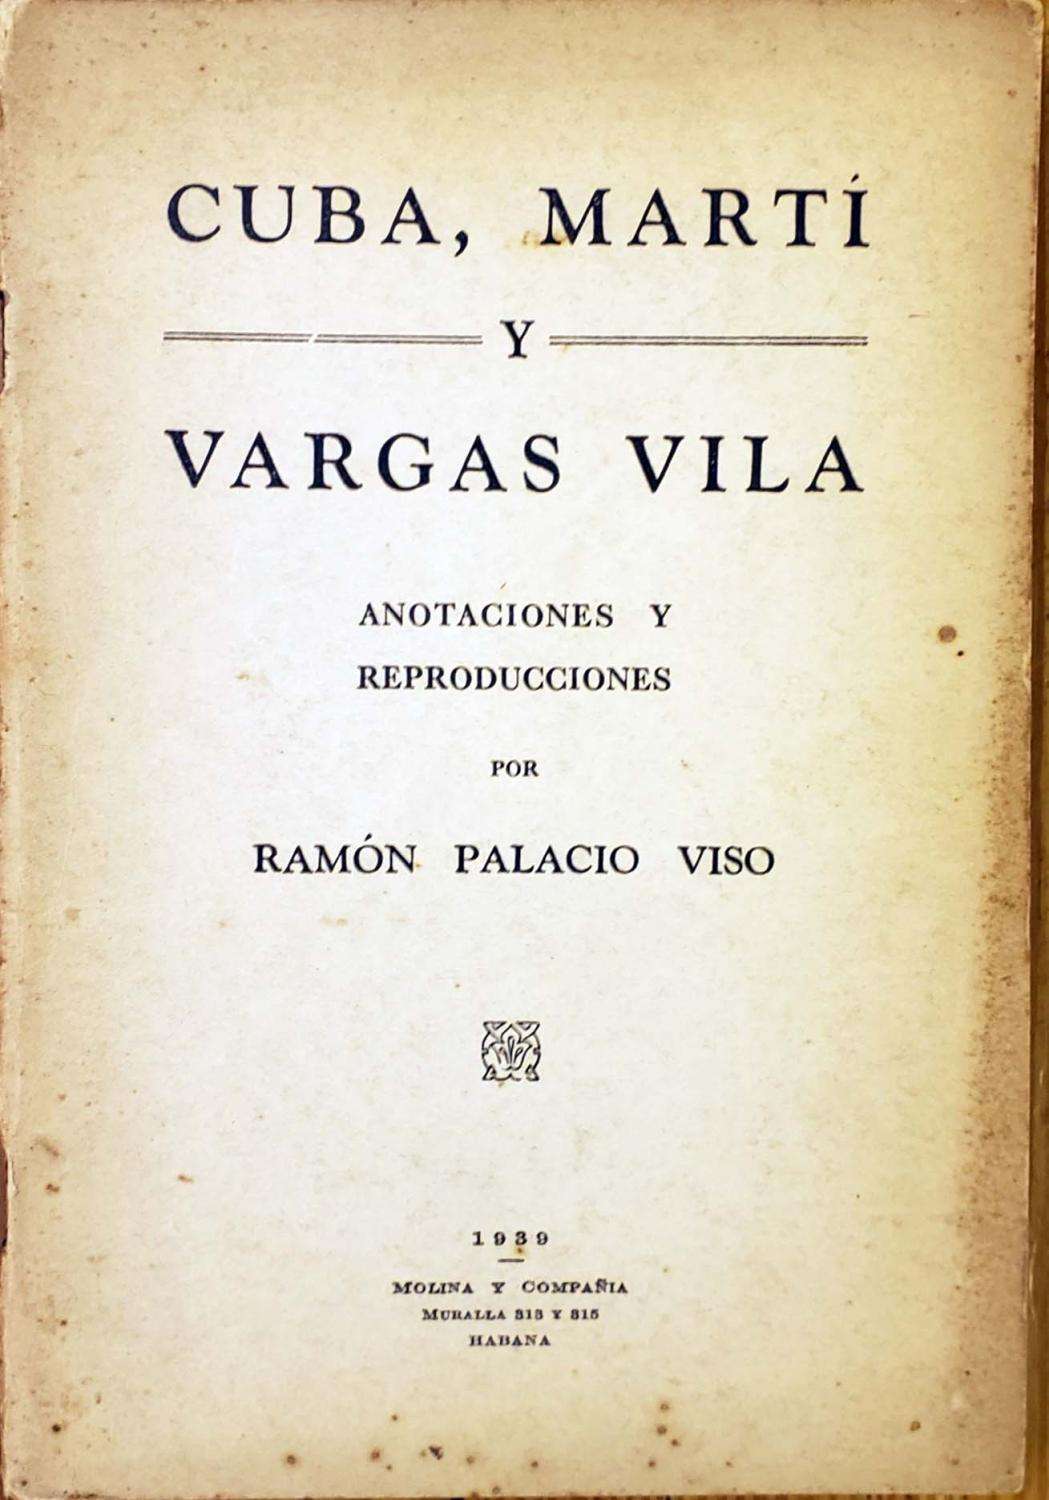 Marti and Vargas Vila